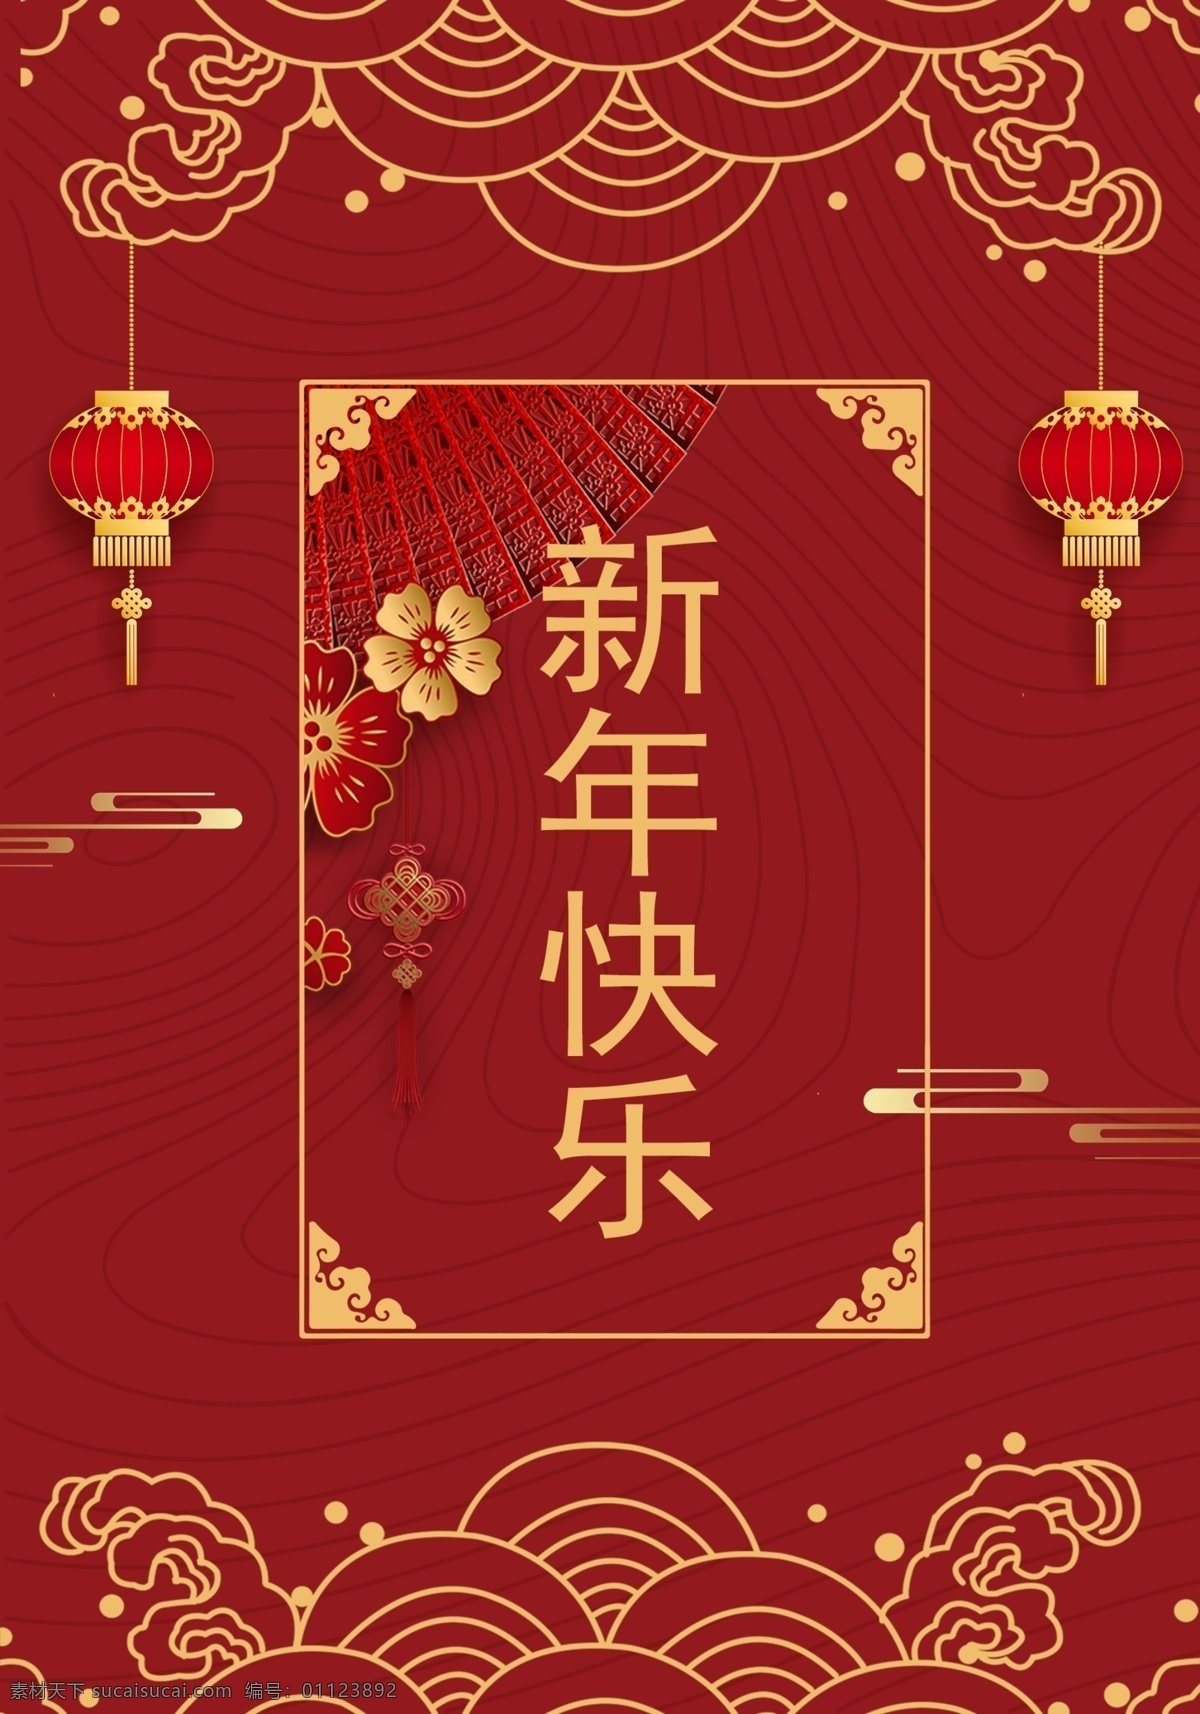 红色 初 珑 创意 中国 传统 新年 海报 2019 肝药 猪 节日 n 扇子 上运 中国红 高兴愉快 帧 新浪网